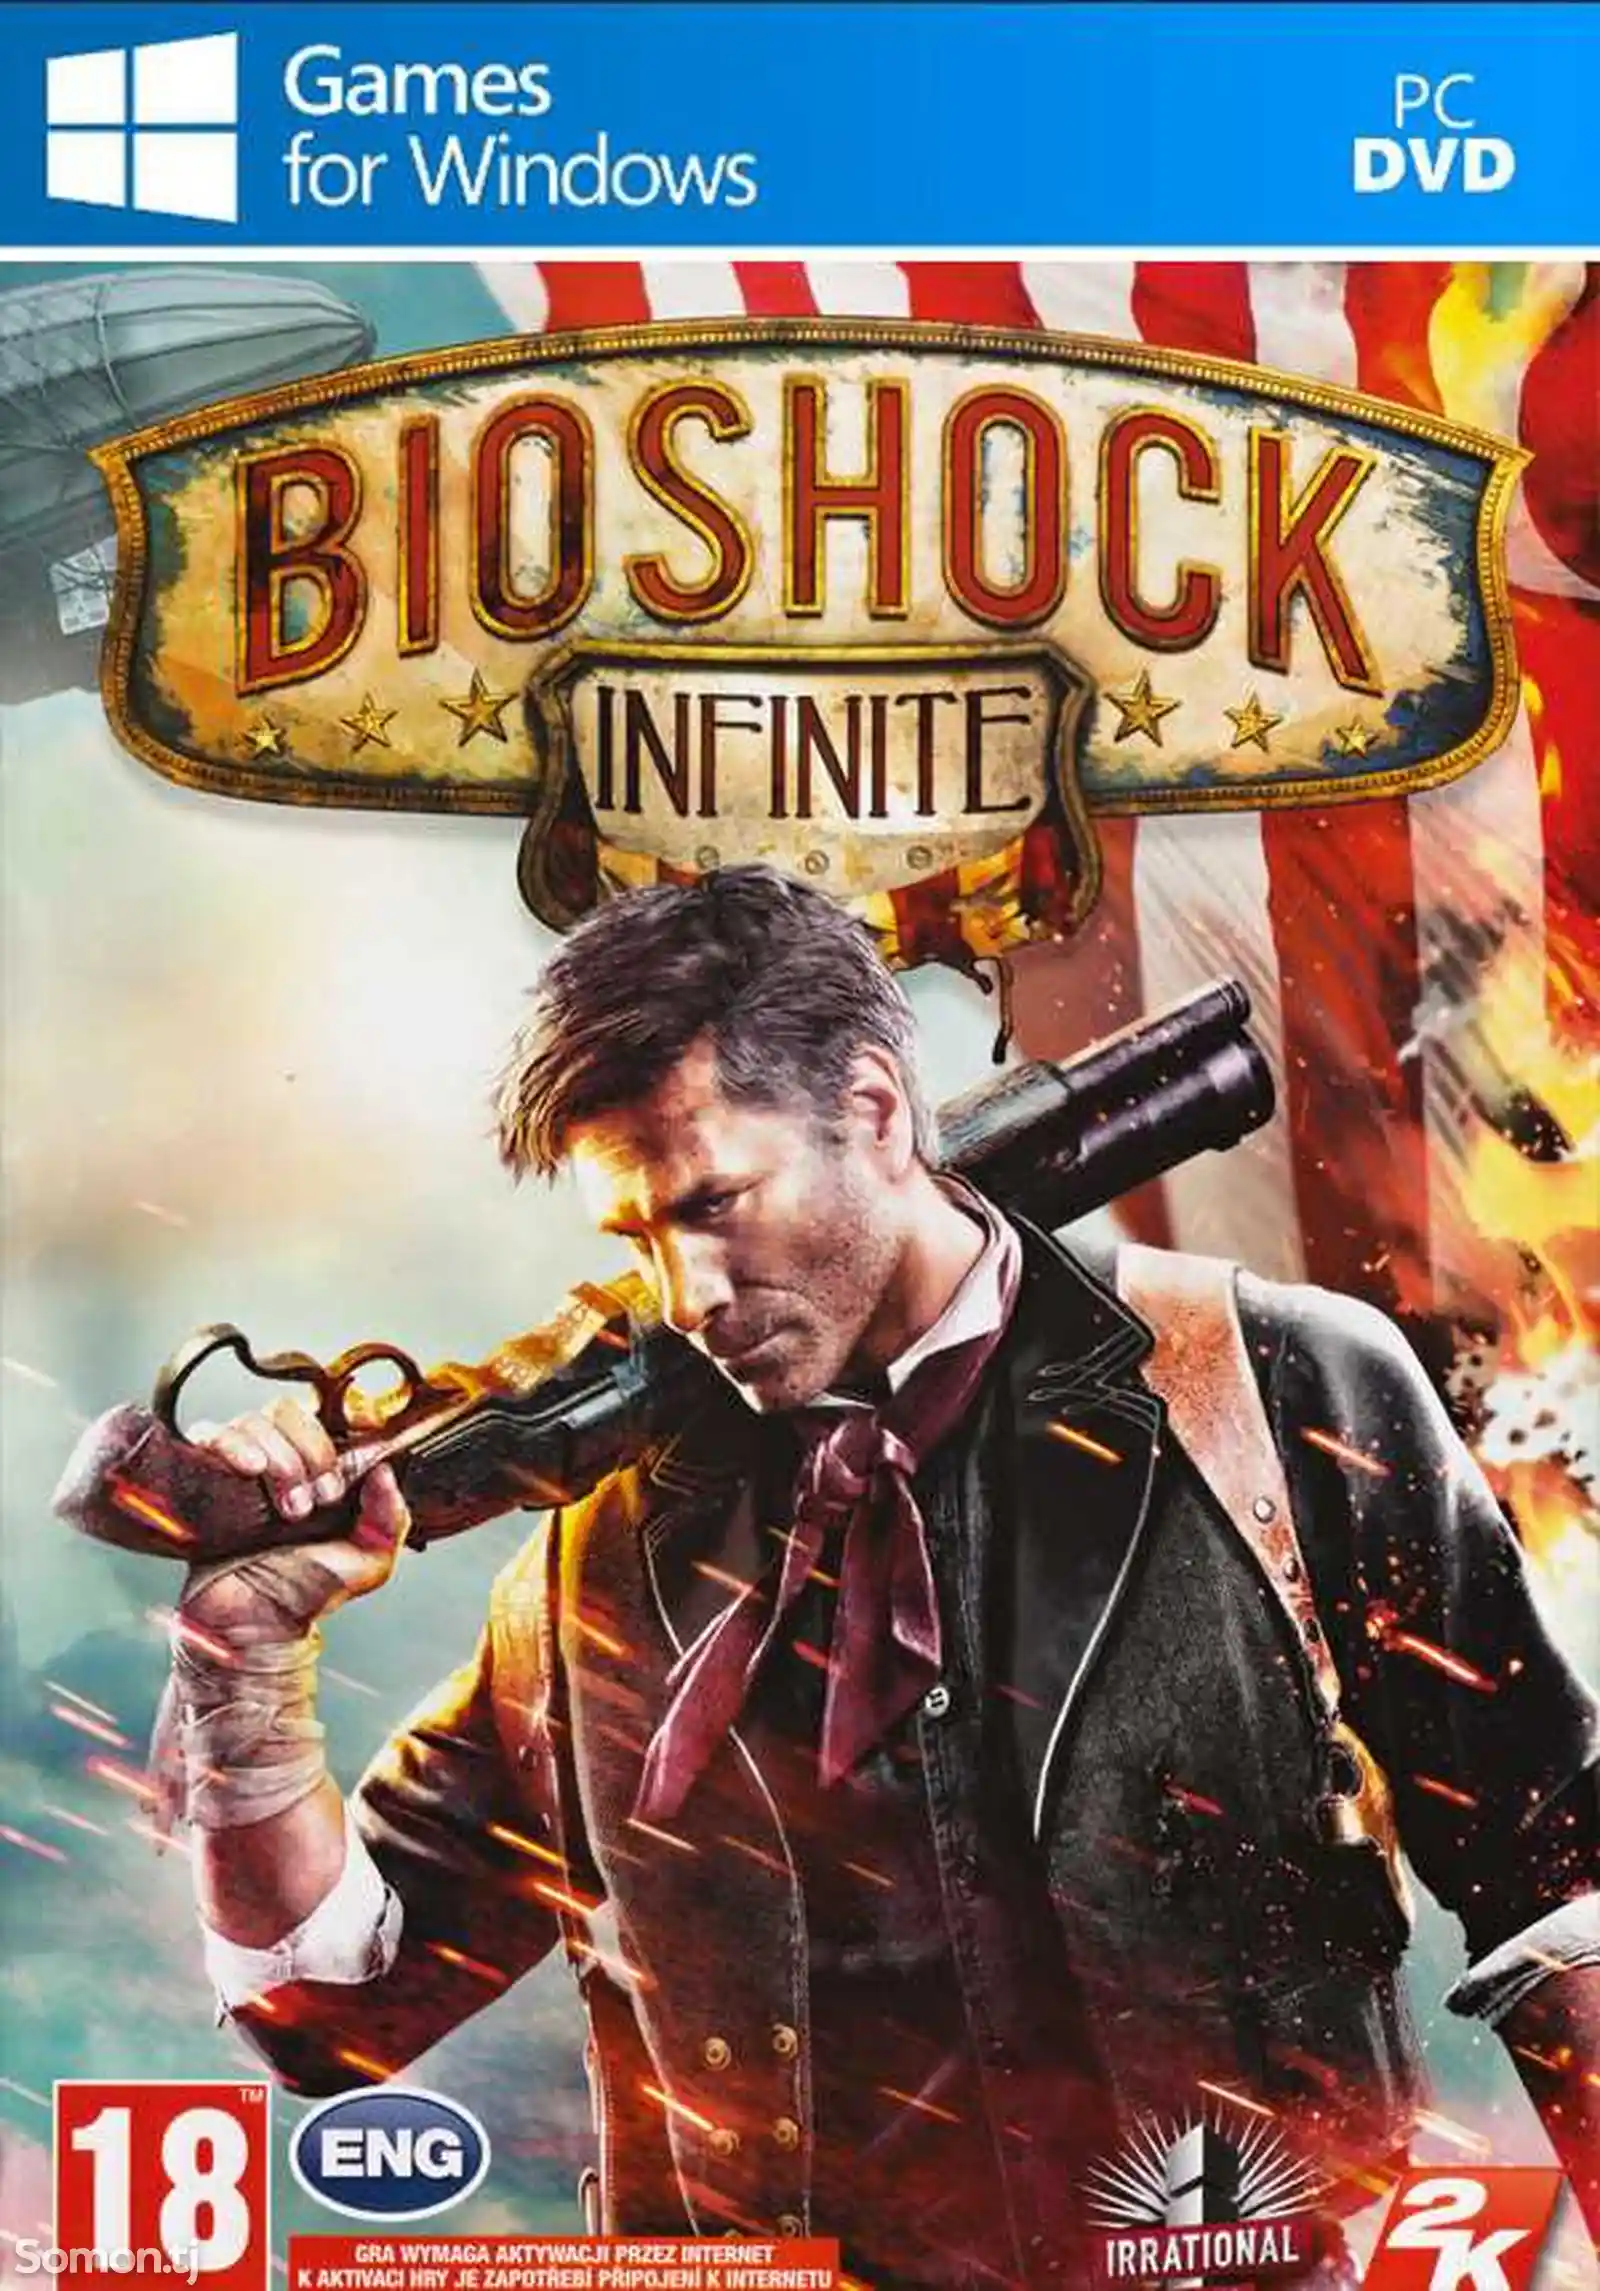 Игра Bioshock infinite компьютера-пк-pc-1